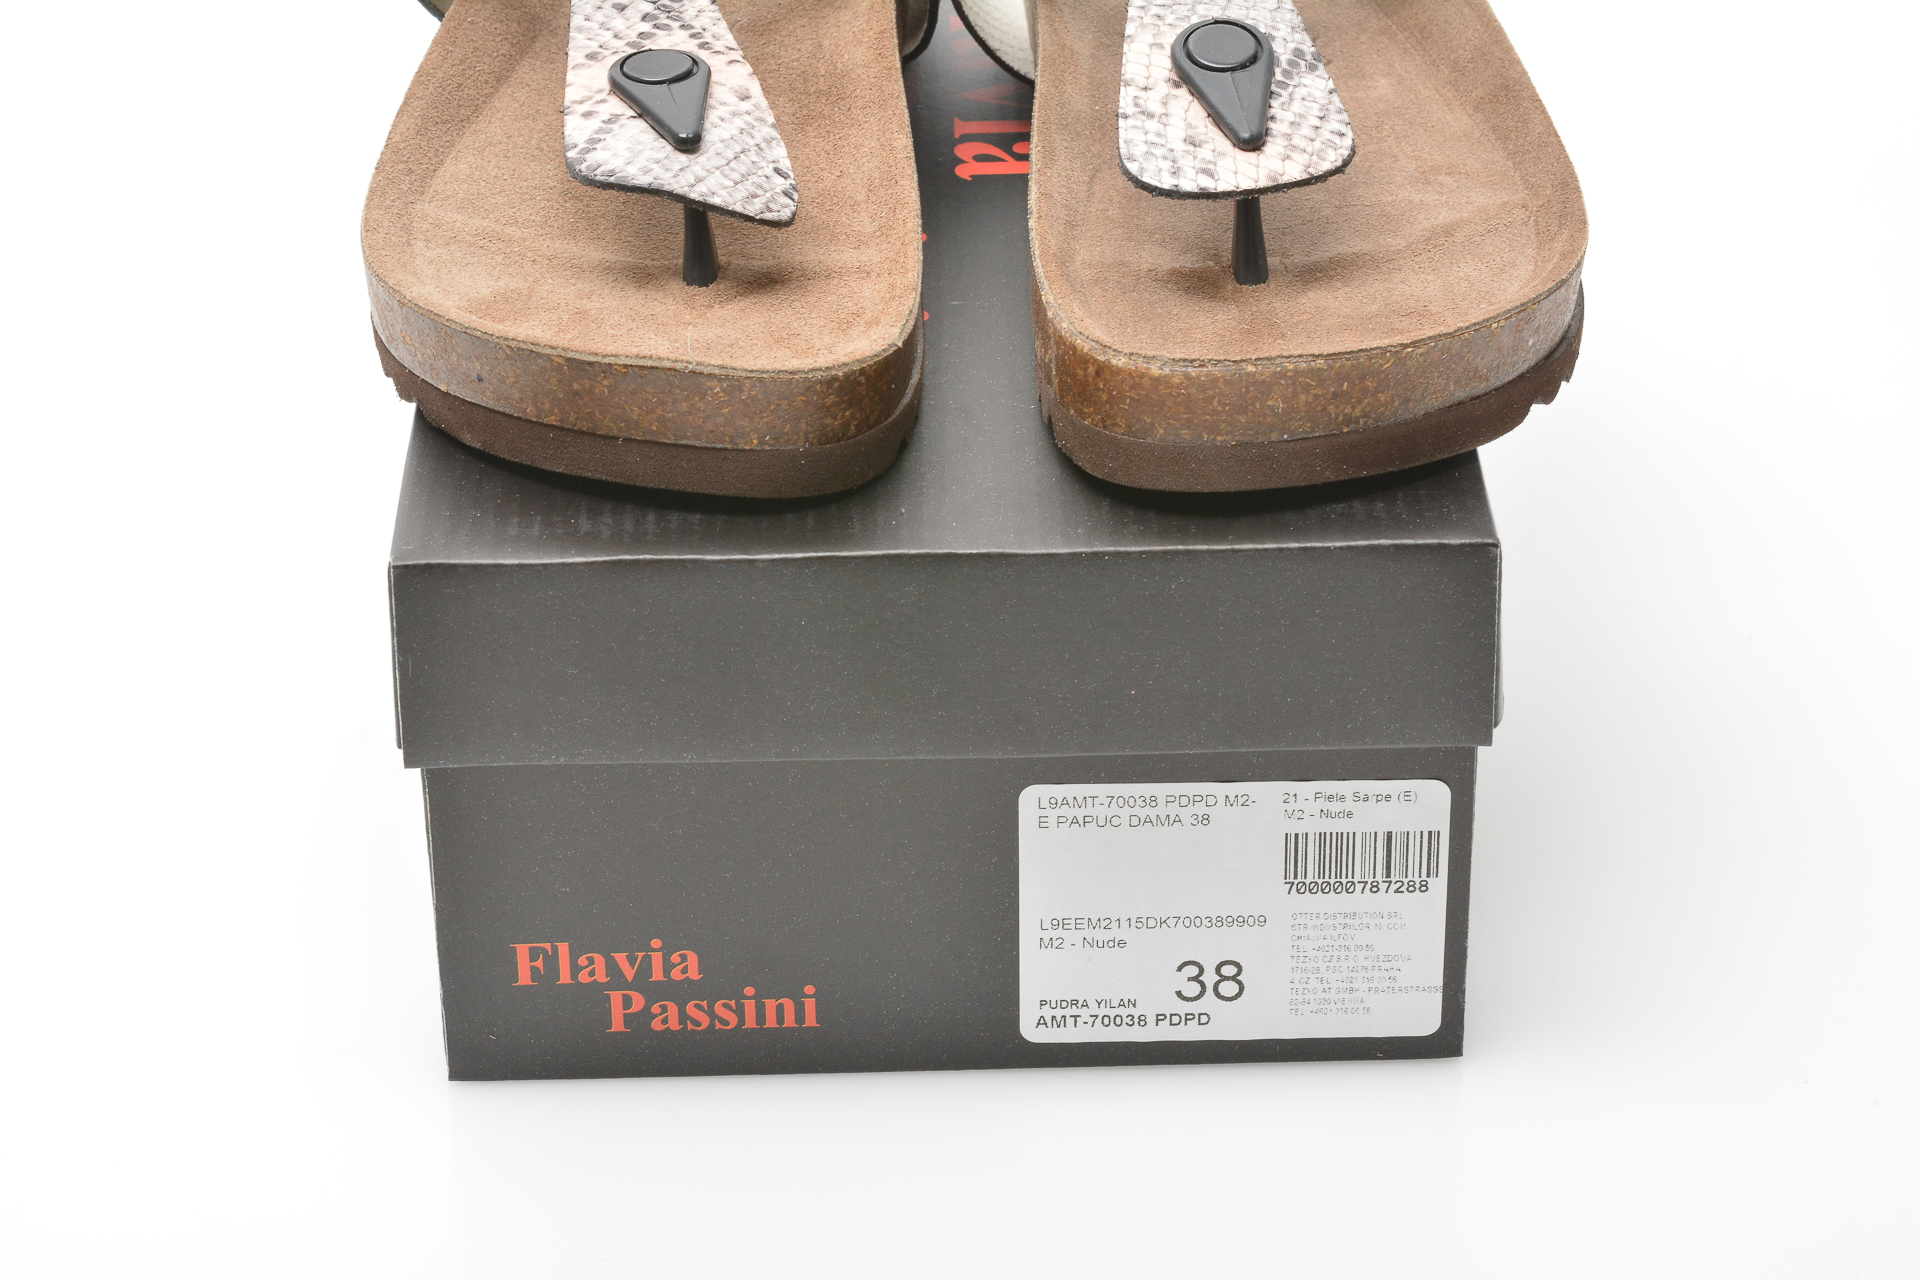 Papuci FLAVIA PASSINI gri, 70038, din piele naturala Flavia Passini imagine 2022 13clothing.ro